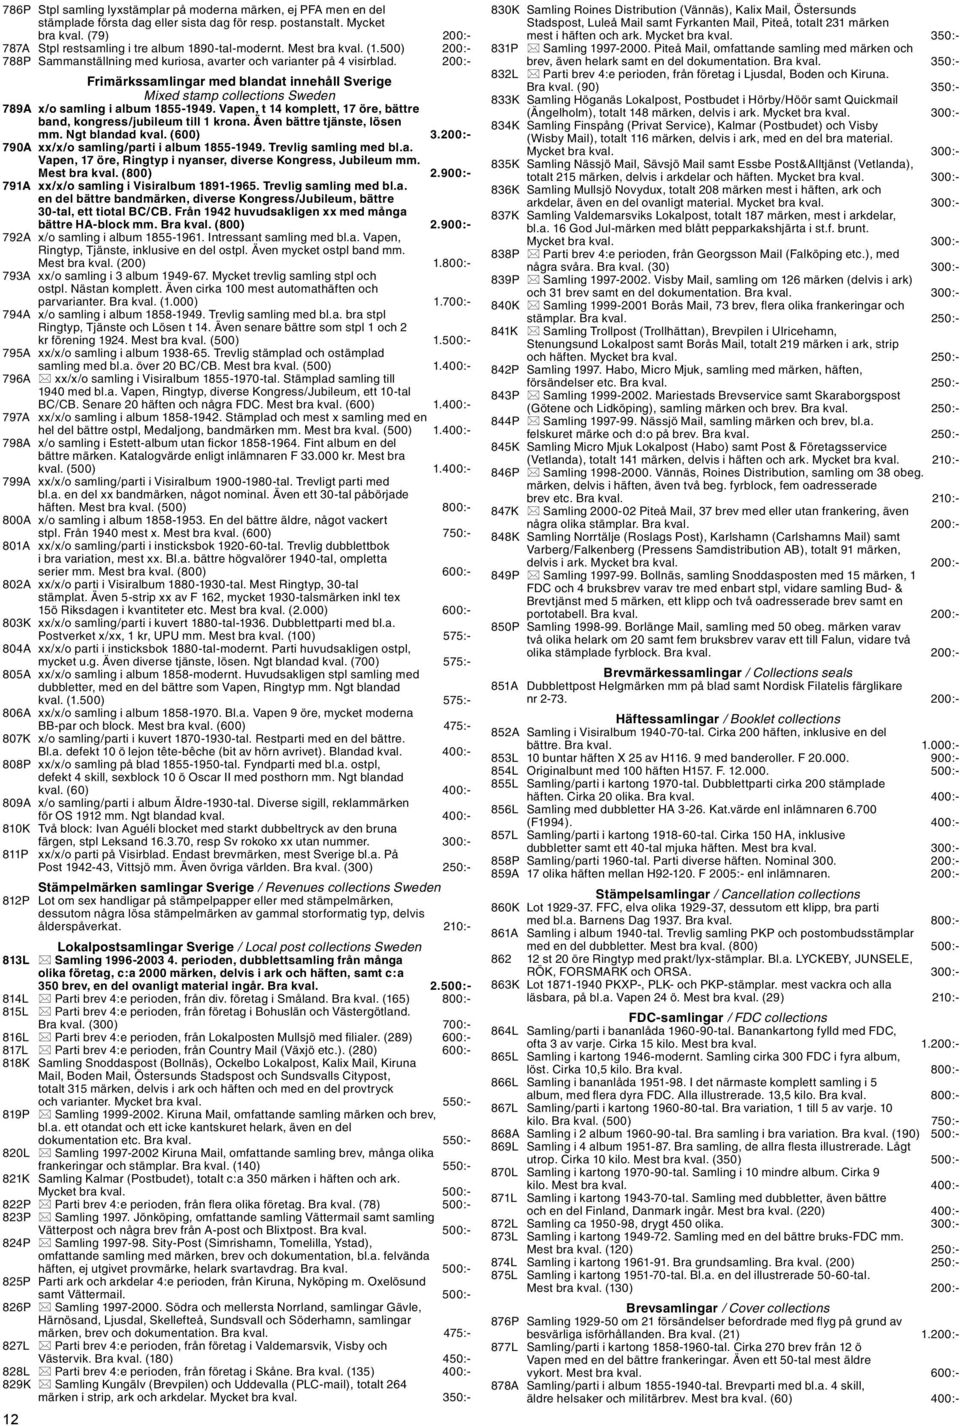 200:- Frimärkssamlingar med blandat innehåll Sverige Mixed stamp collections Sweden 789A x/o samling i album 1855-1949. Vapen, t 14 komplett, 17 öre, bättre band, kongress/jubileum till 1 krona.